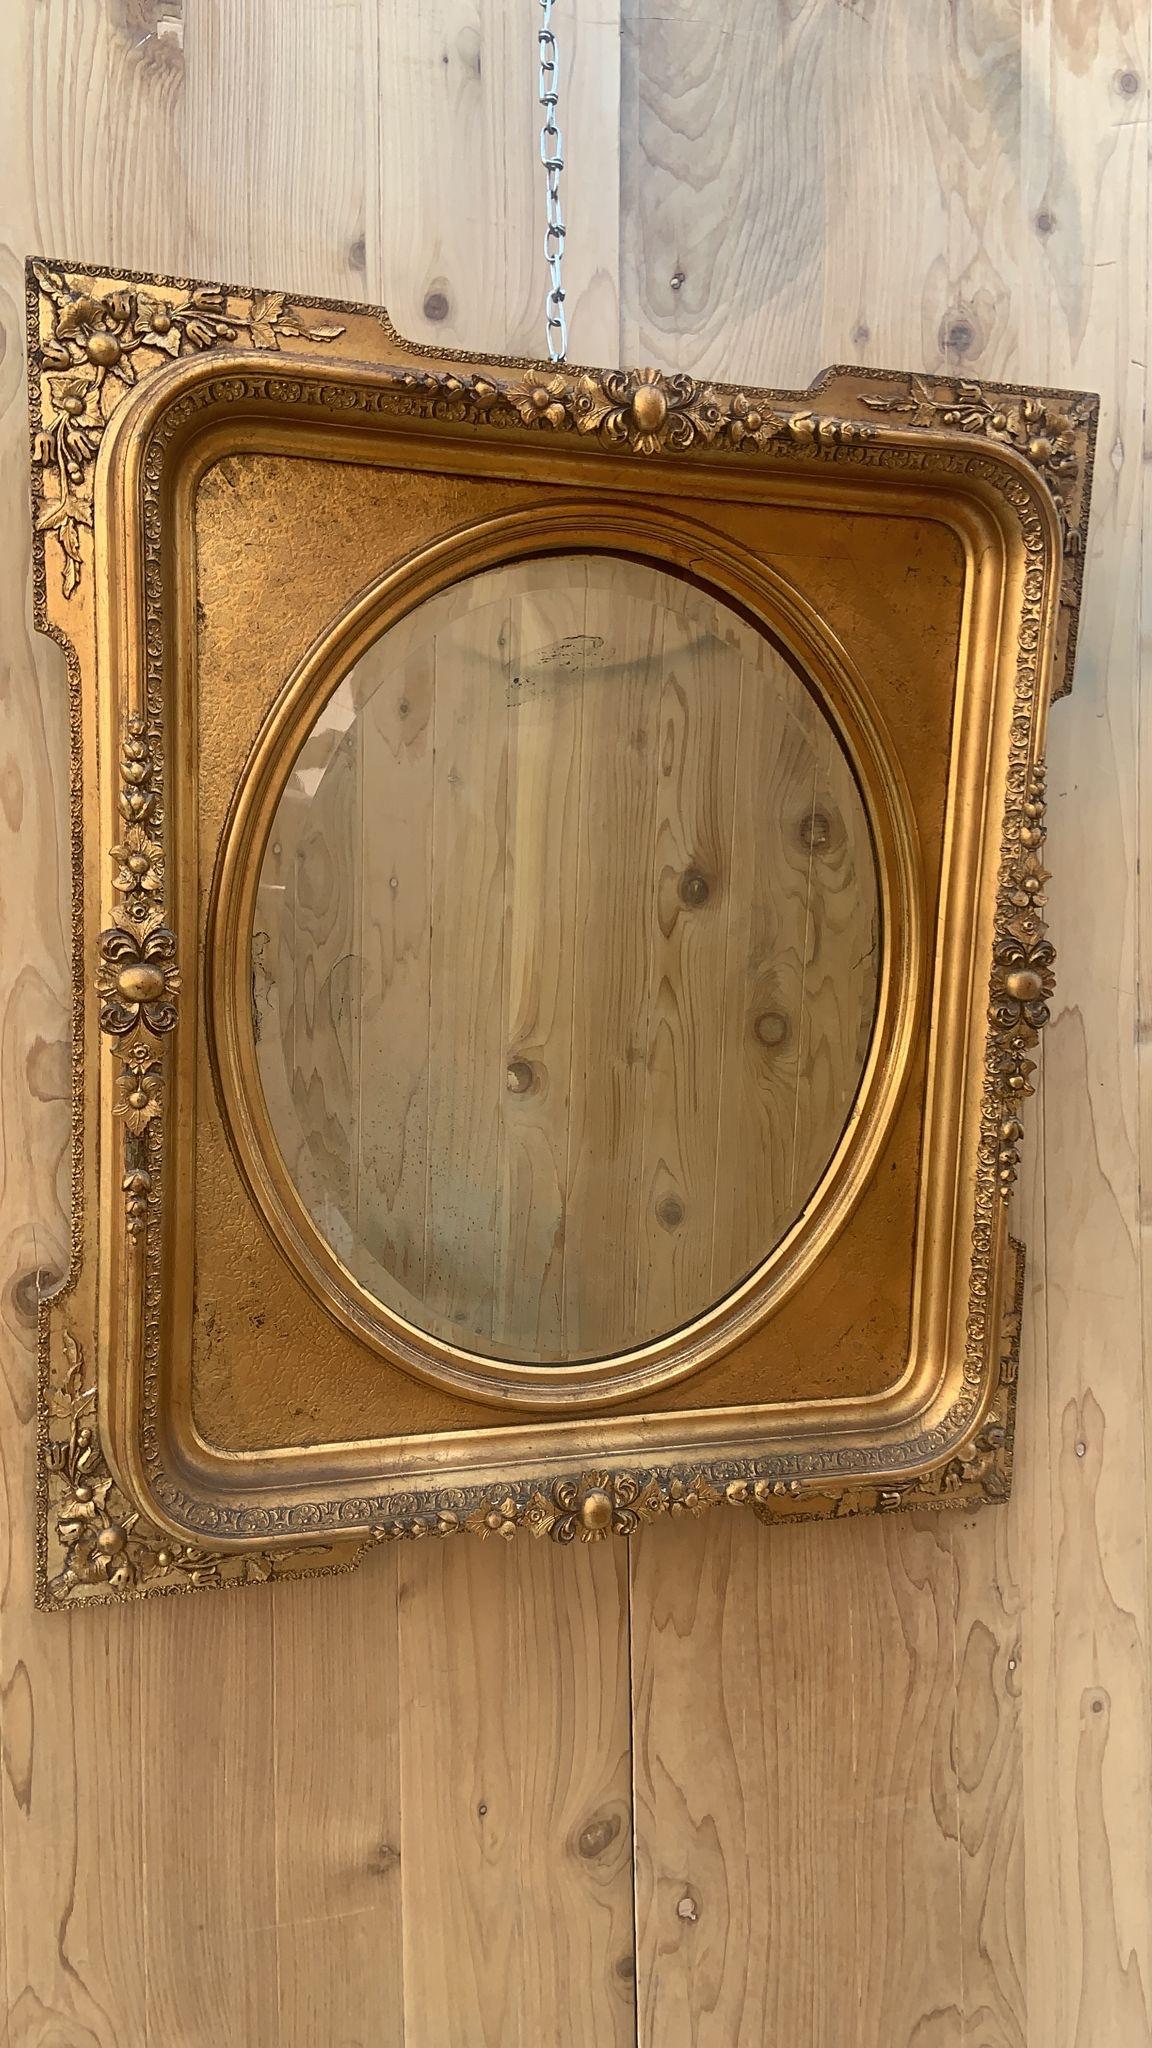 Antique Miroir français de style Napoléon III, sculpté et doré, à encadrement biseauté

Miroir mural ancien à cadre orné de style Napoléon III. Ce miroir sculpté à la main présente de magnifiques détails. Miroir mural ovale biseauté et doré,